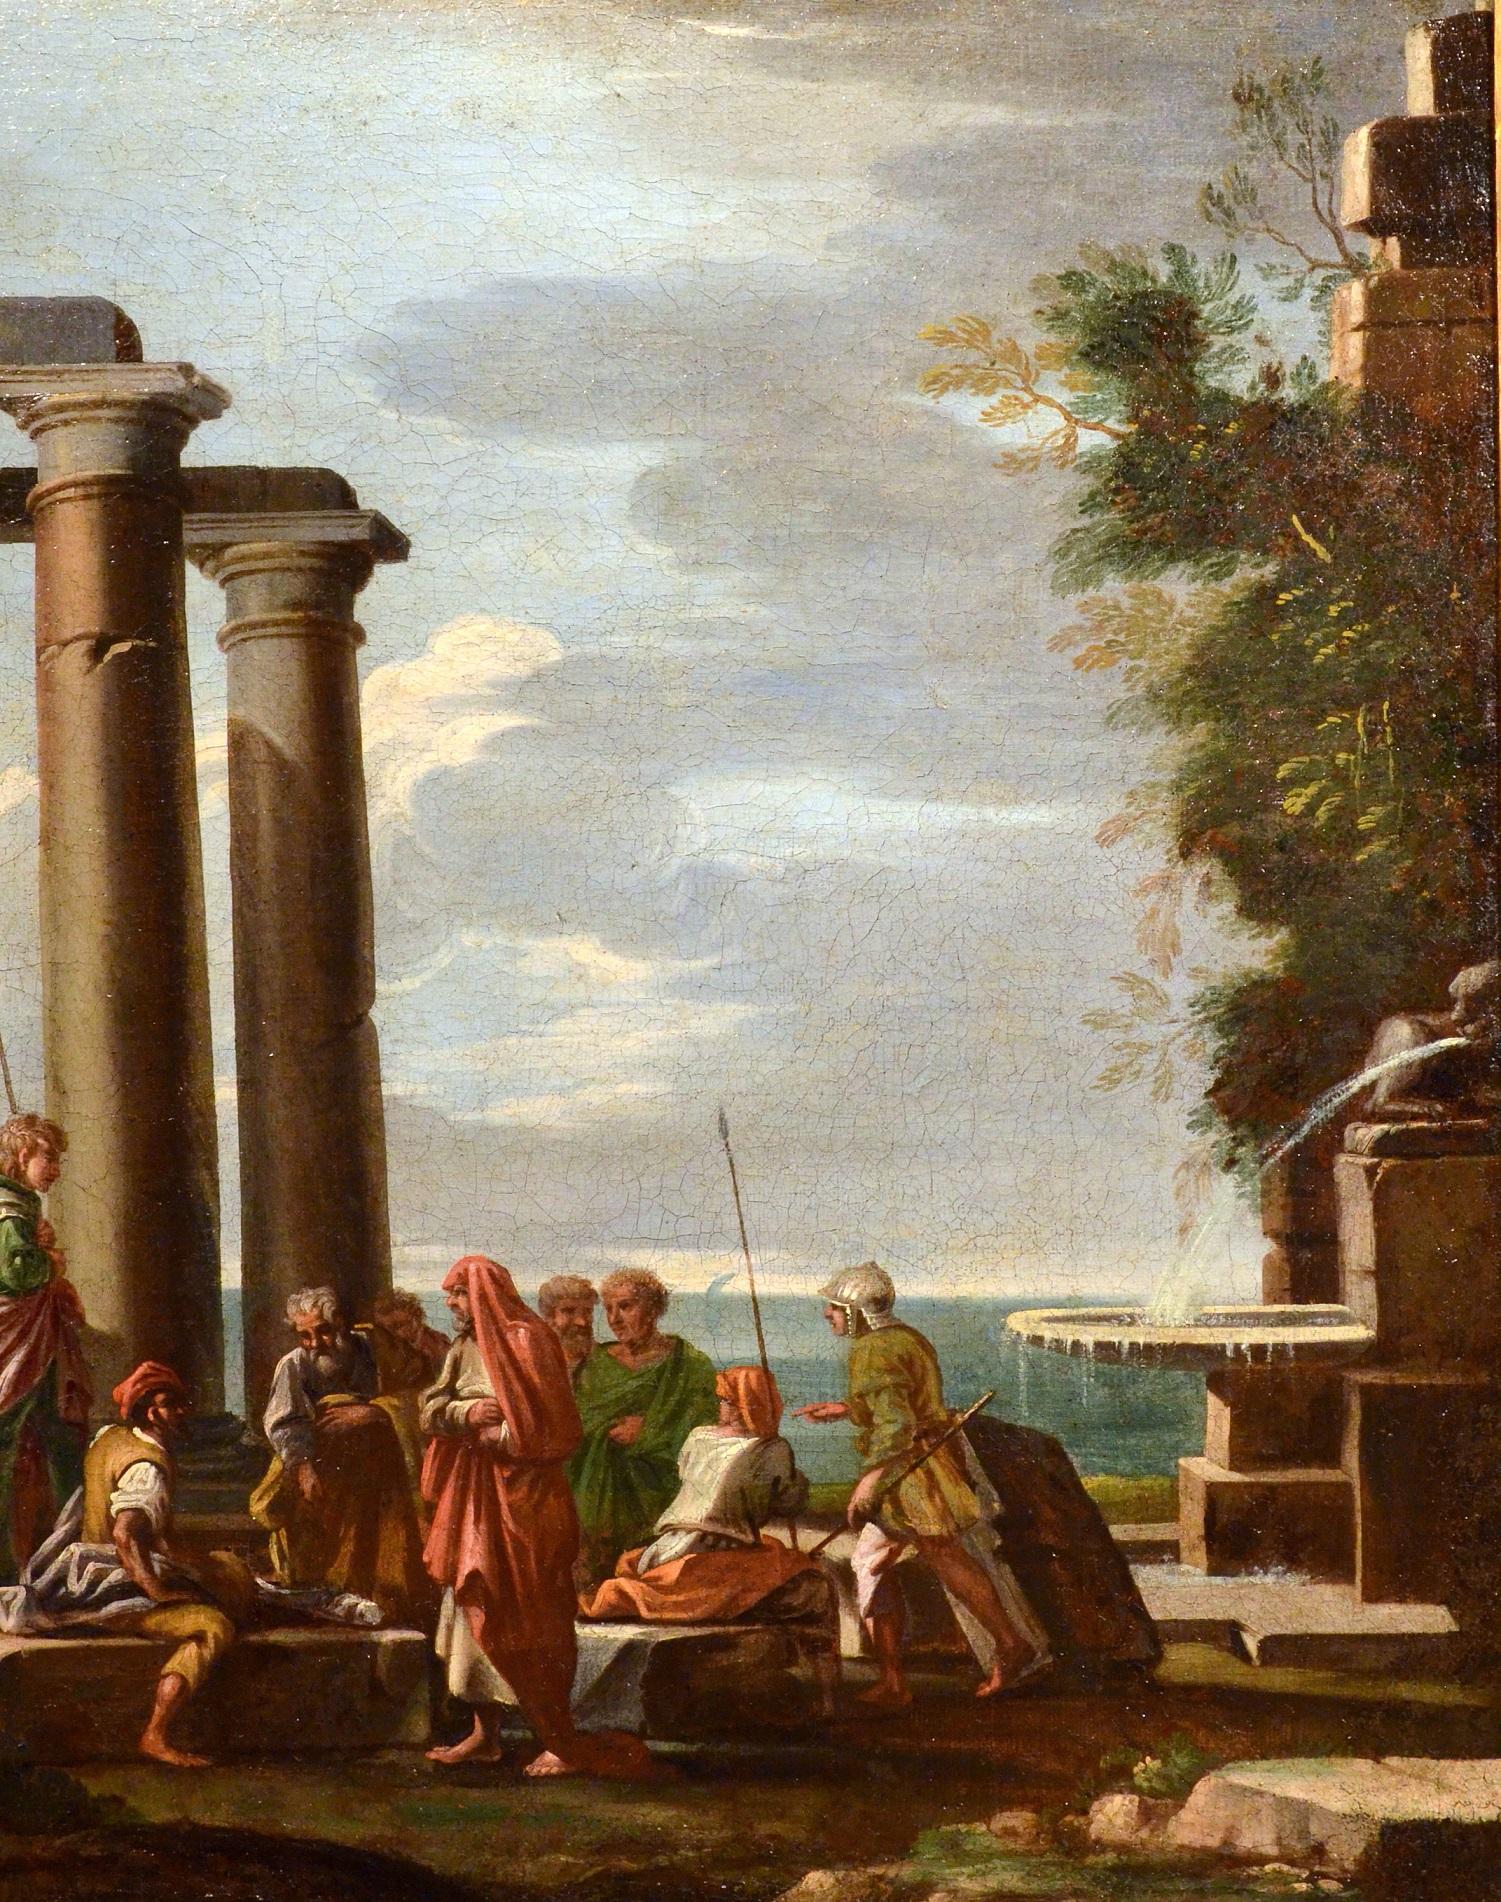 Ghisolfi Gemälde Öl auf Leinwand, alter Meister, 17. Jahrhundert, architektonische Capriccio-Kunst (Braun), Landscape Painting, von Giovanni Ghisolfi (Milan 1623 - 1683)